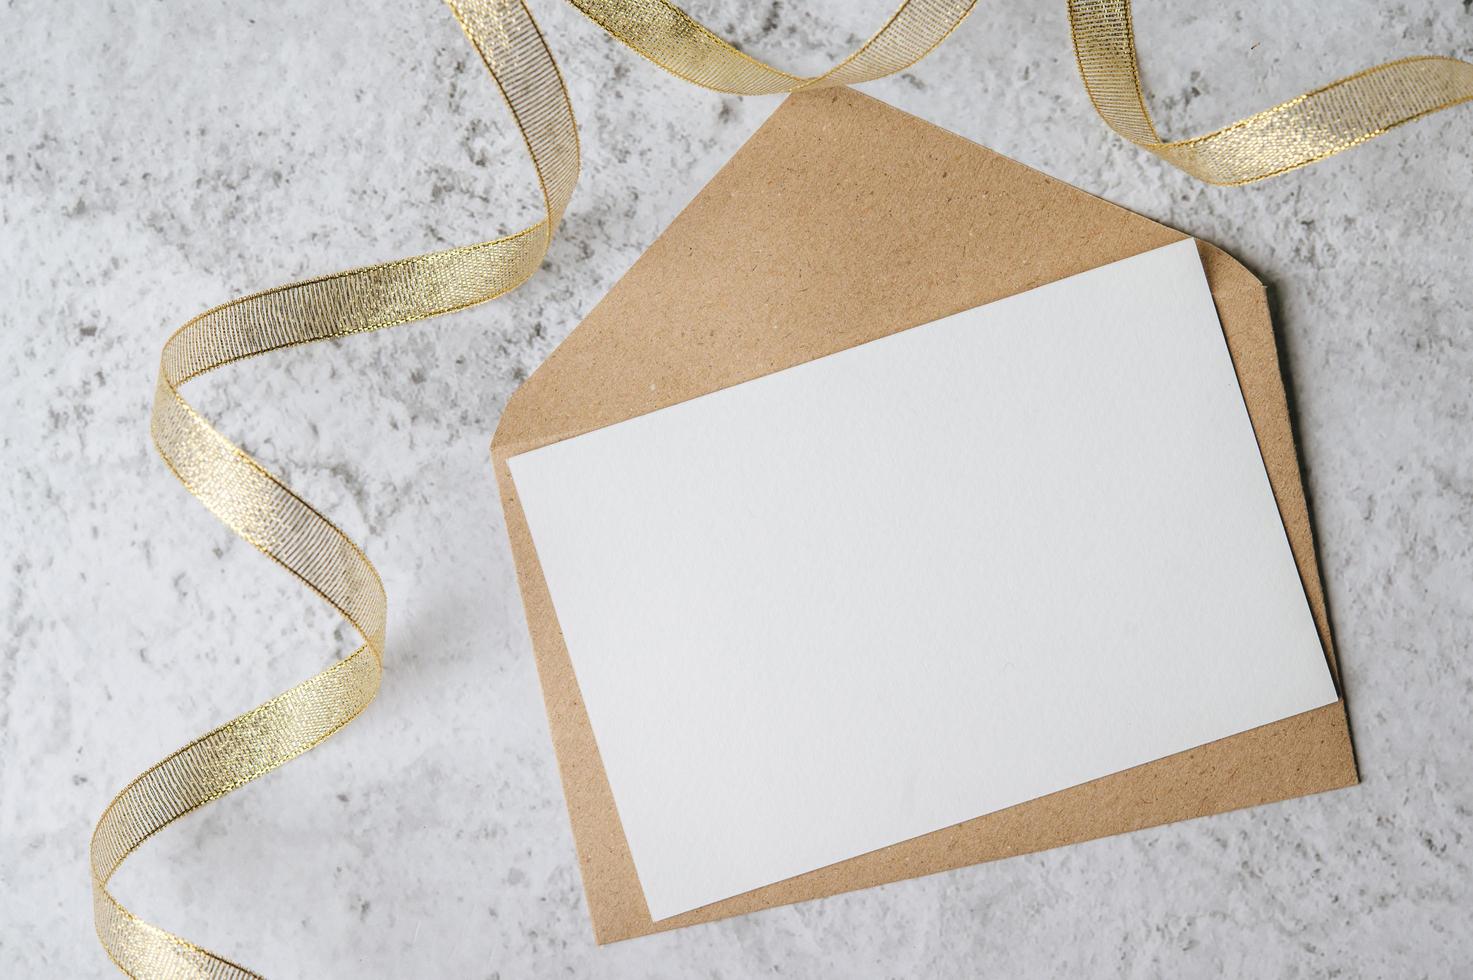 ett tomt kort med kuvert och blad placeras på vit bakgrund foto